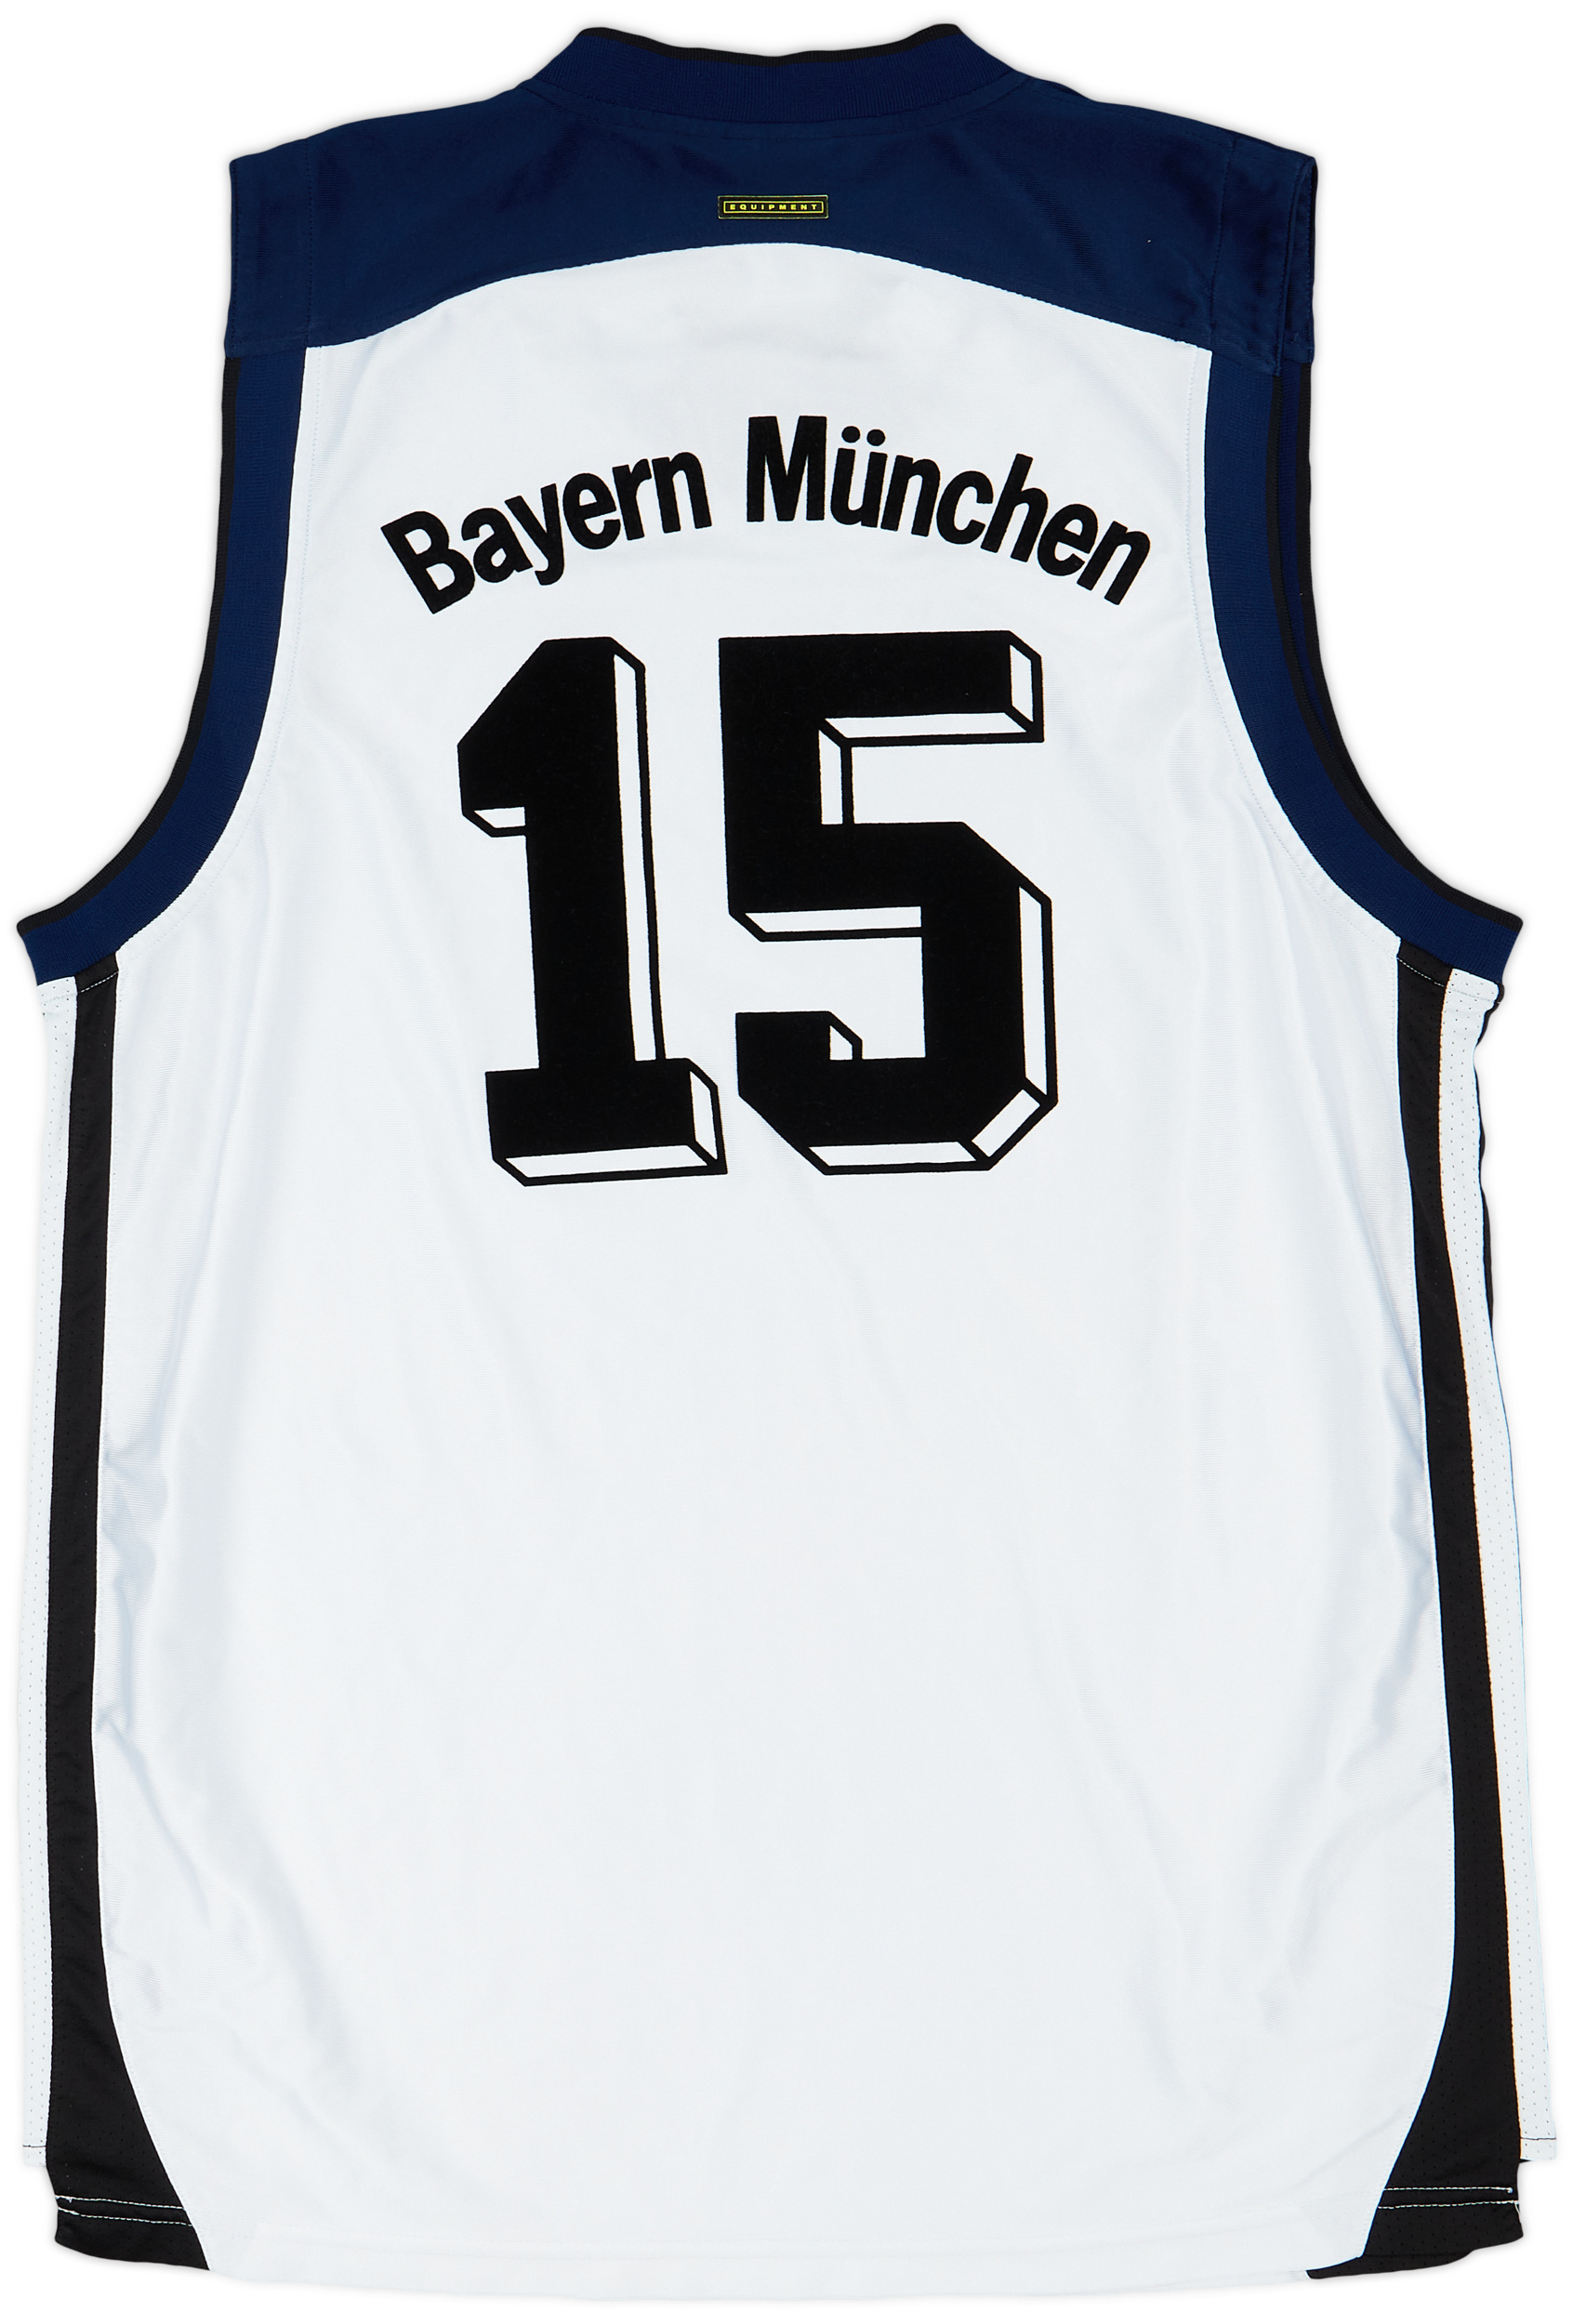 2000-01 Bayern Munich Basketball Player Issue Away Jersey - 9/10 - ()